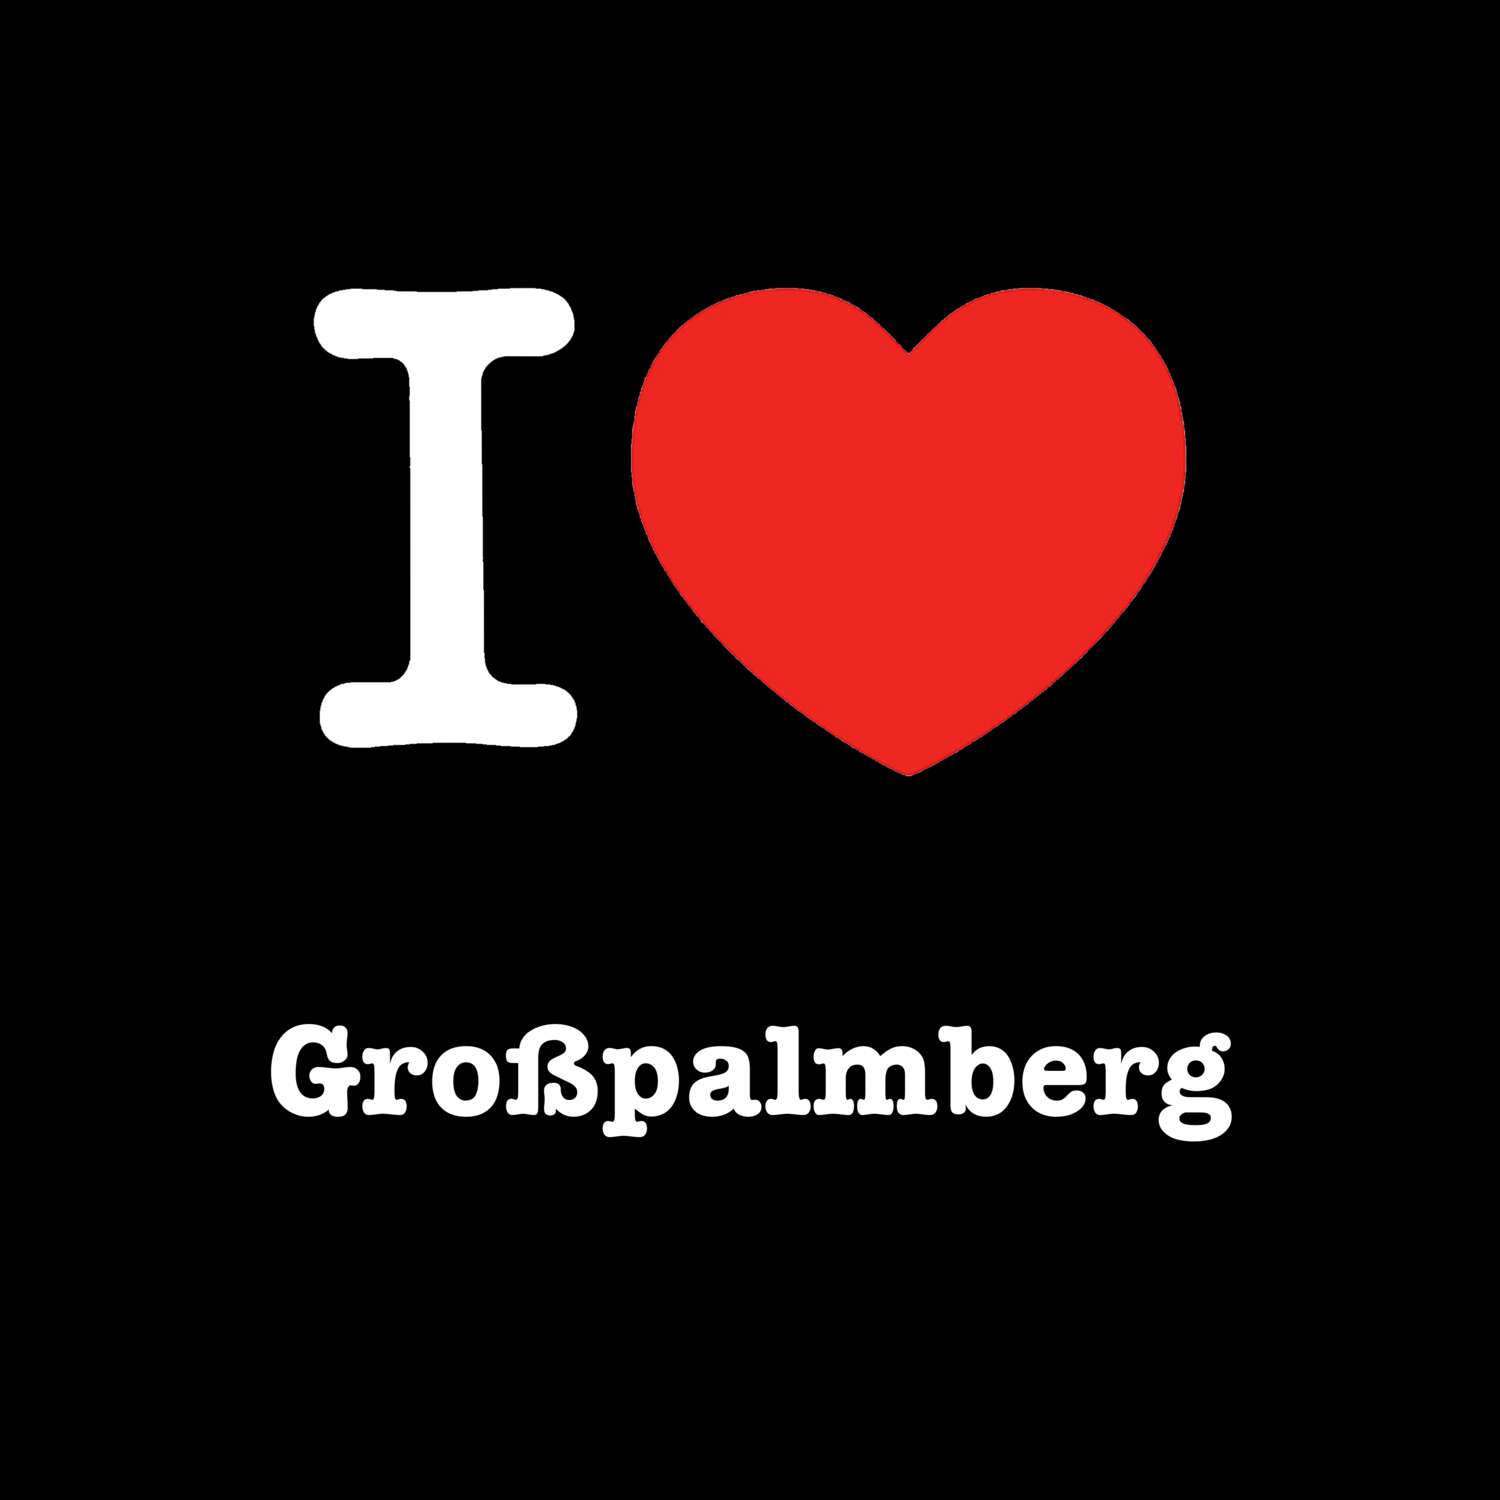 Großpalmberg T-Shirt »I love«